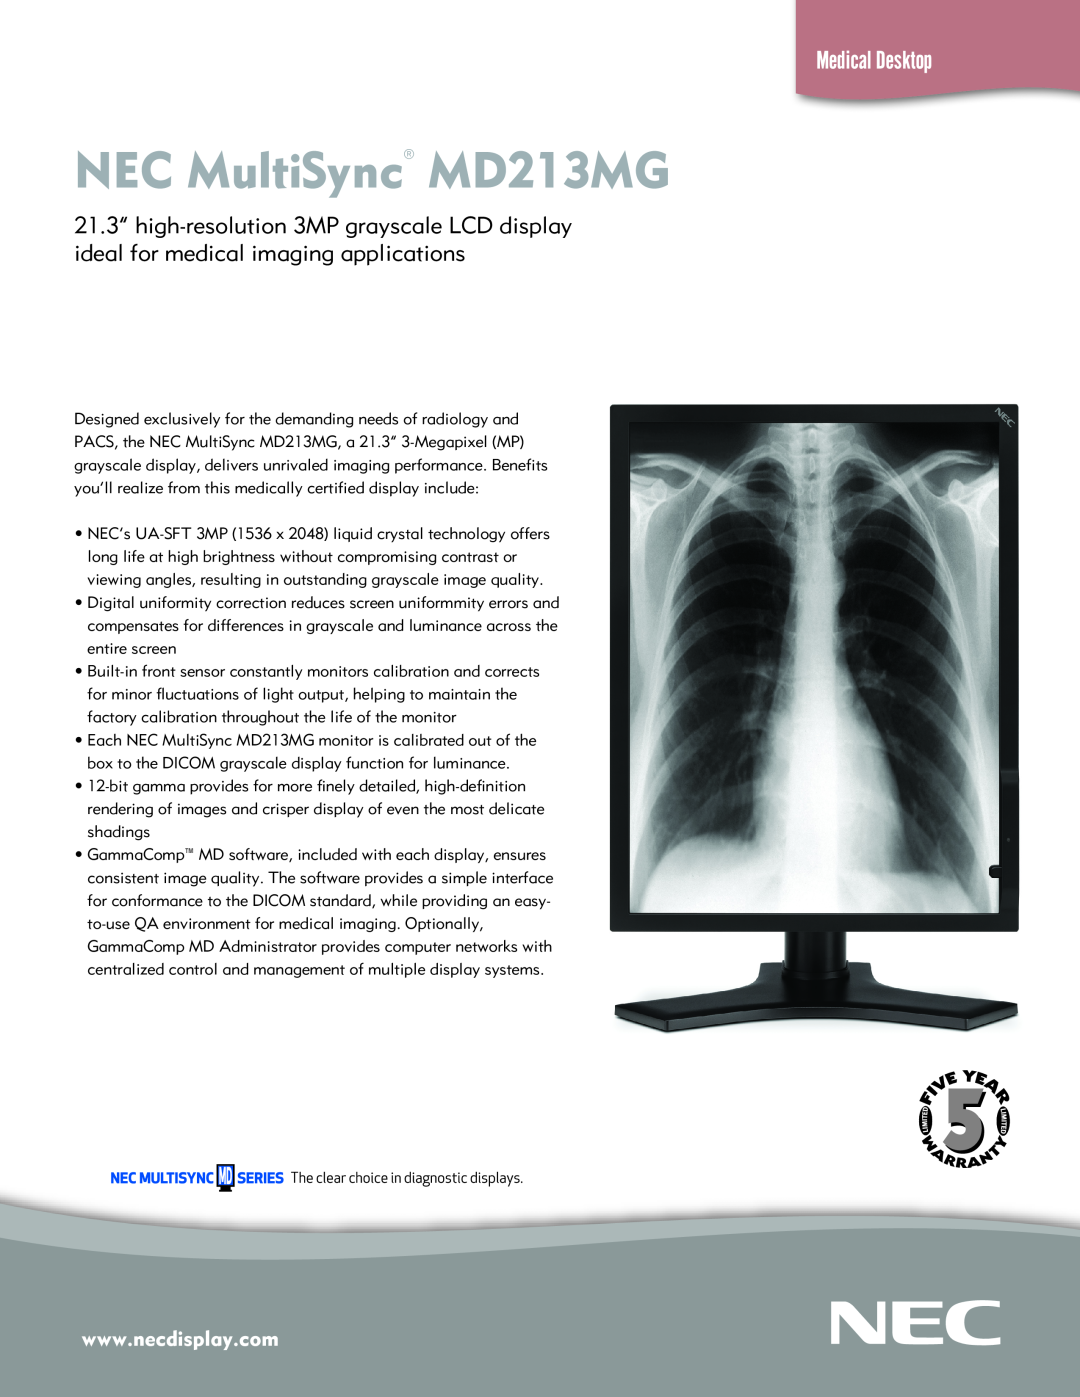 NEC manual NEC MultiSync MD213MG, Medical Desktop 